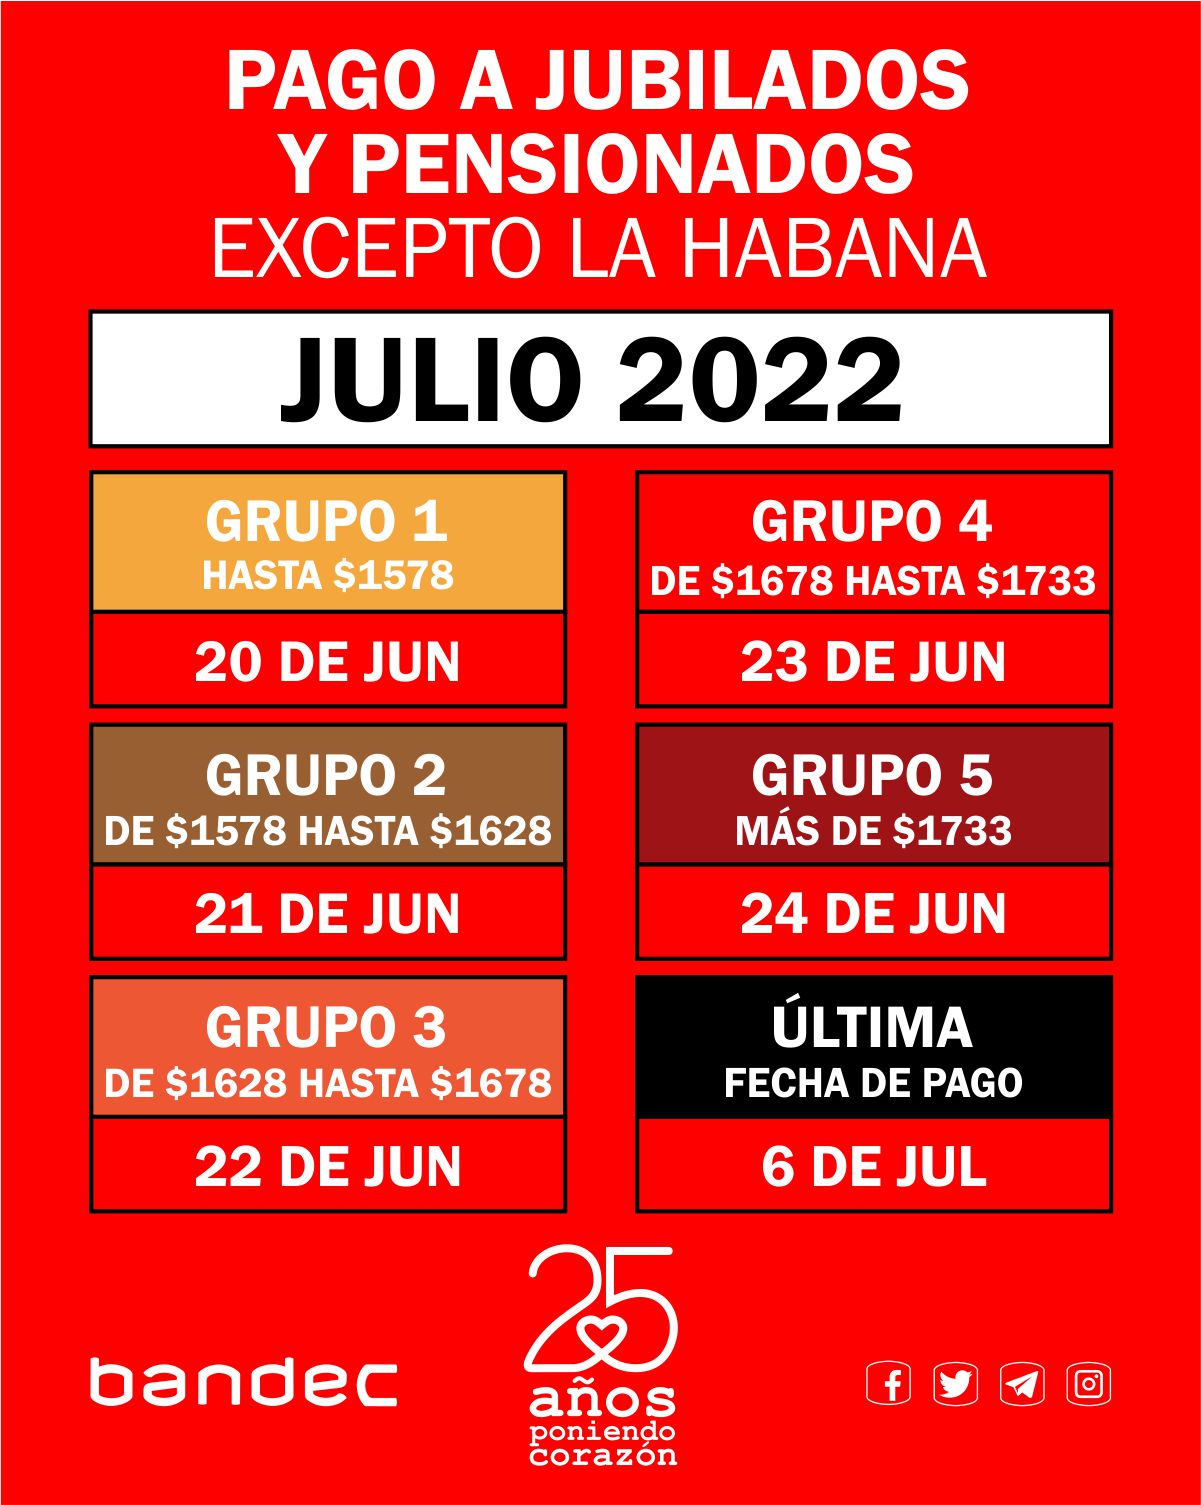 PAGO A JUBILADOS JULIO 2022 